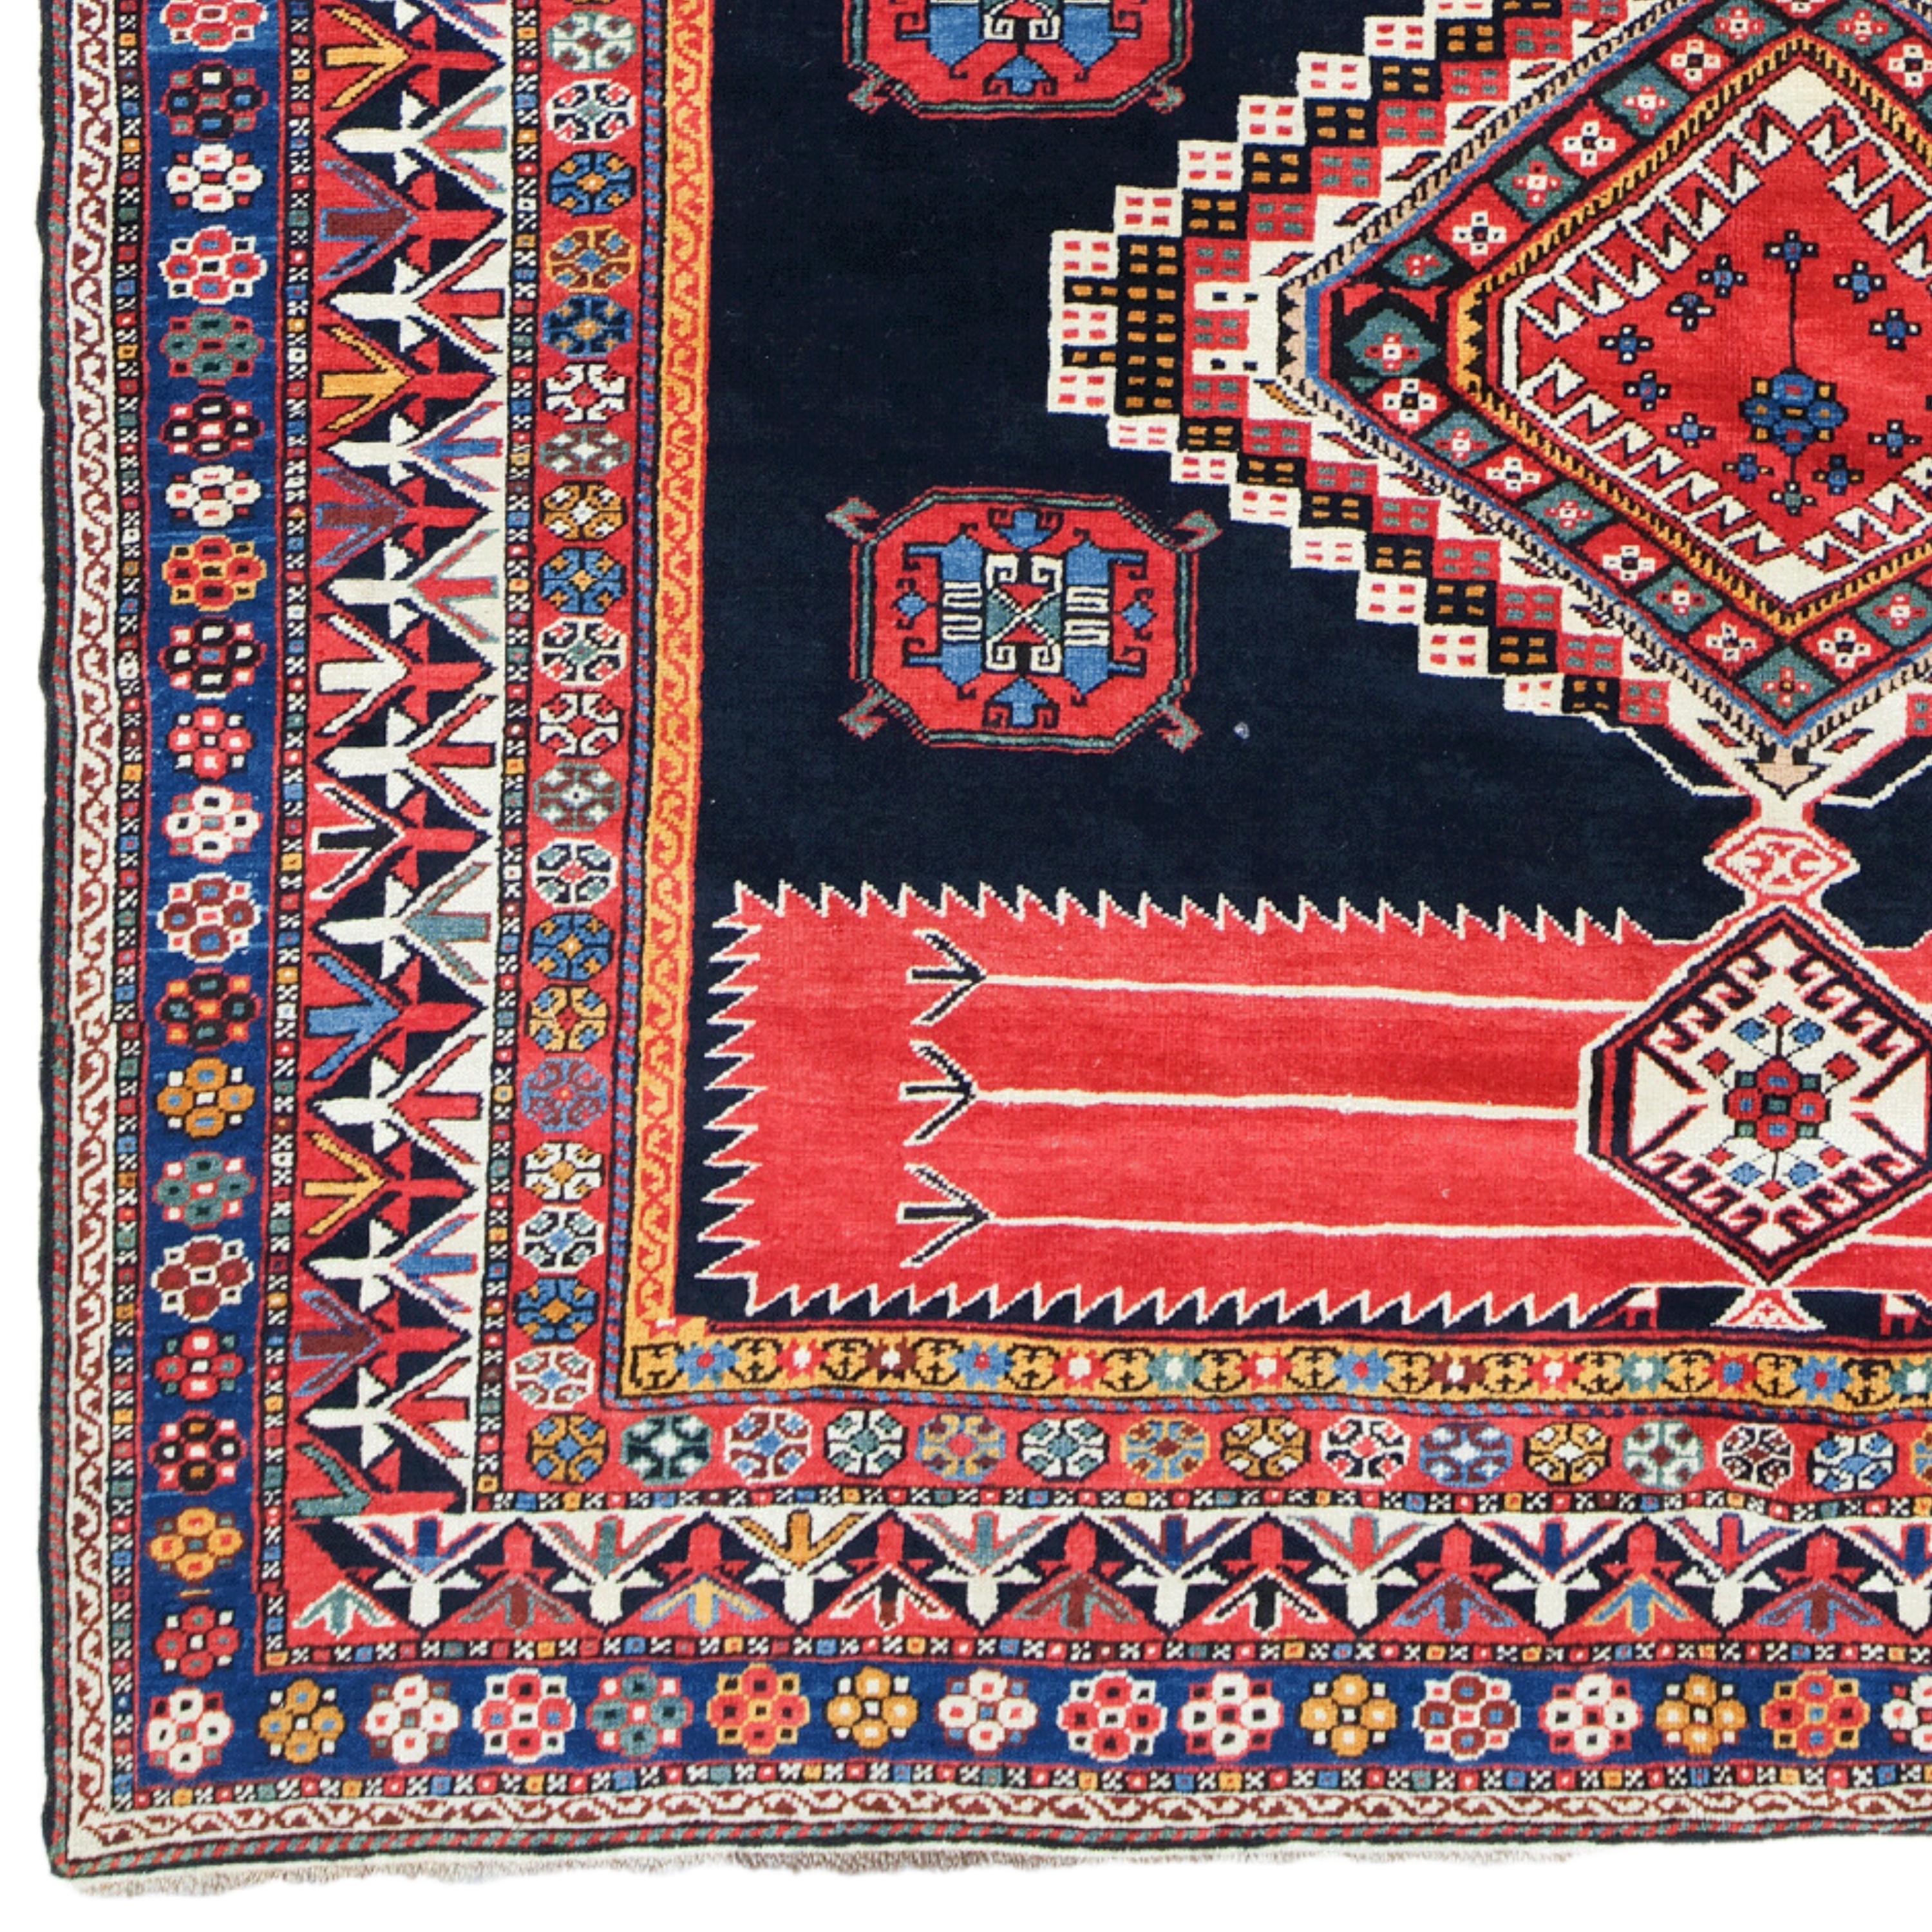 Schirwan-Teppich aus dem 19. Jahrhundert - Antiker handgewebter Teppich

Dieser elegante Schirwan-Teppich aus dem 19. Jahrhundert verleiht jedem Raum mit seiner historischen Textur und seiner reichen Farbpalette eine edle Note. Das 198x258 cm große